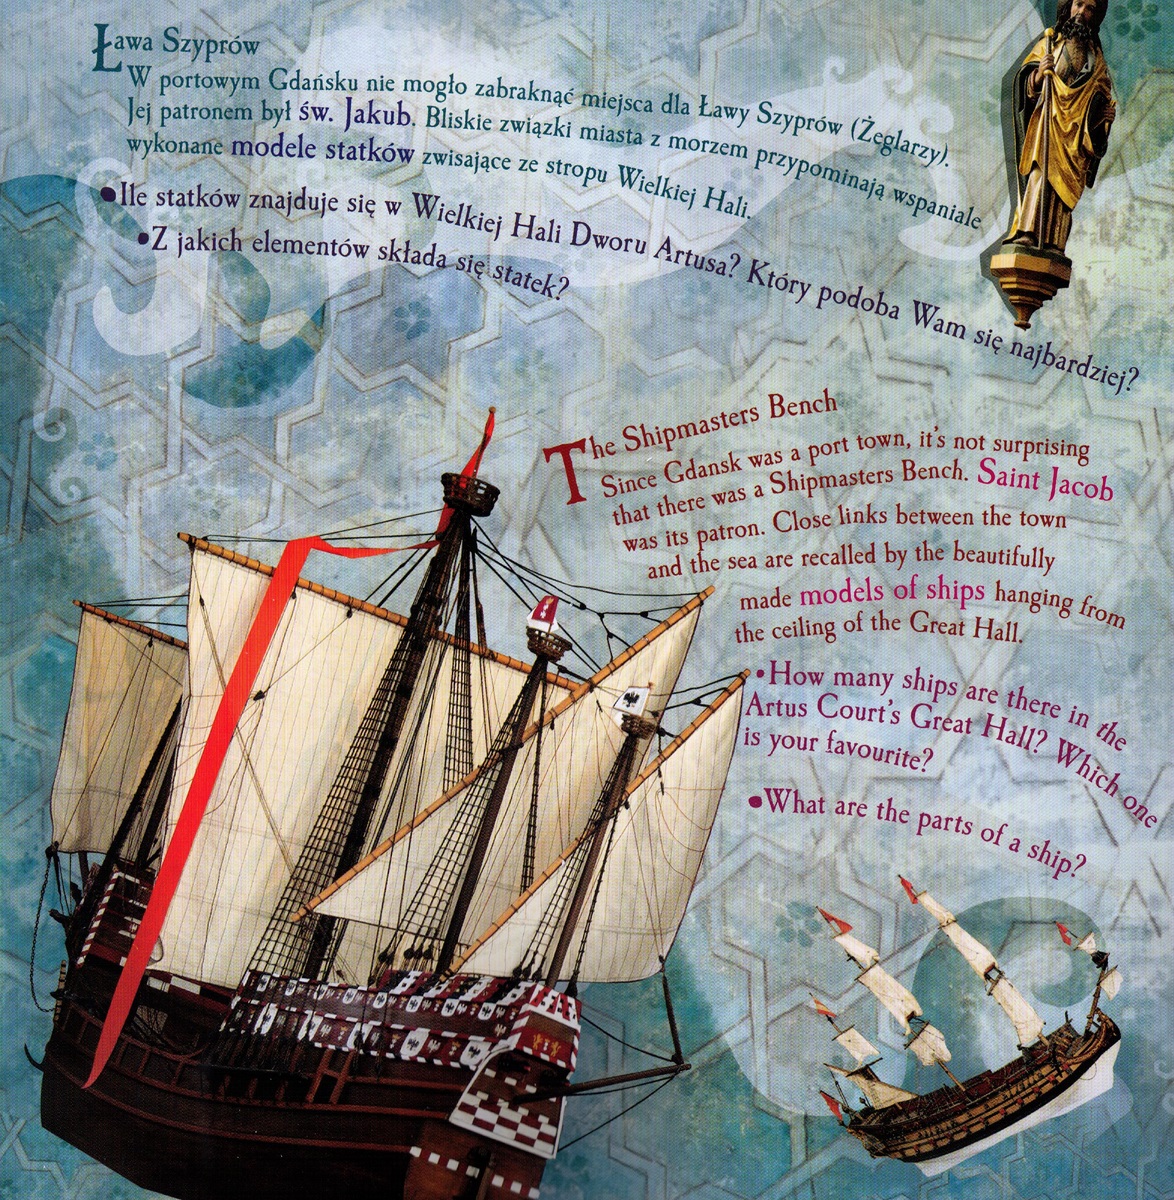 Strona książki Sowi Dwór Artusa. Zdjęcia modeli statków oraz rzeźby św. Jakuba. Pomiędzy nimi opis Ława Szyprów w trzech językach.